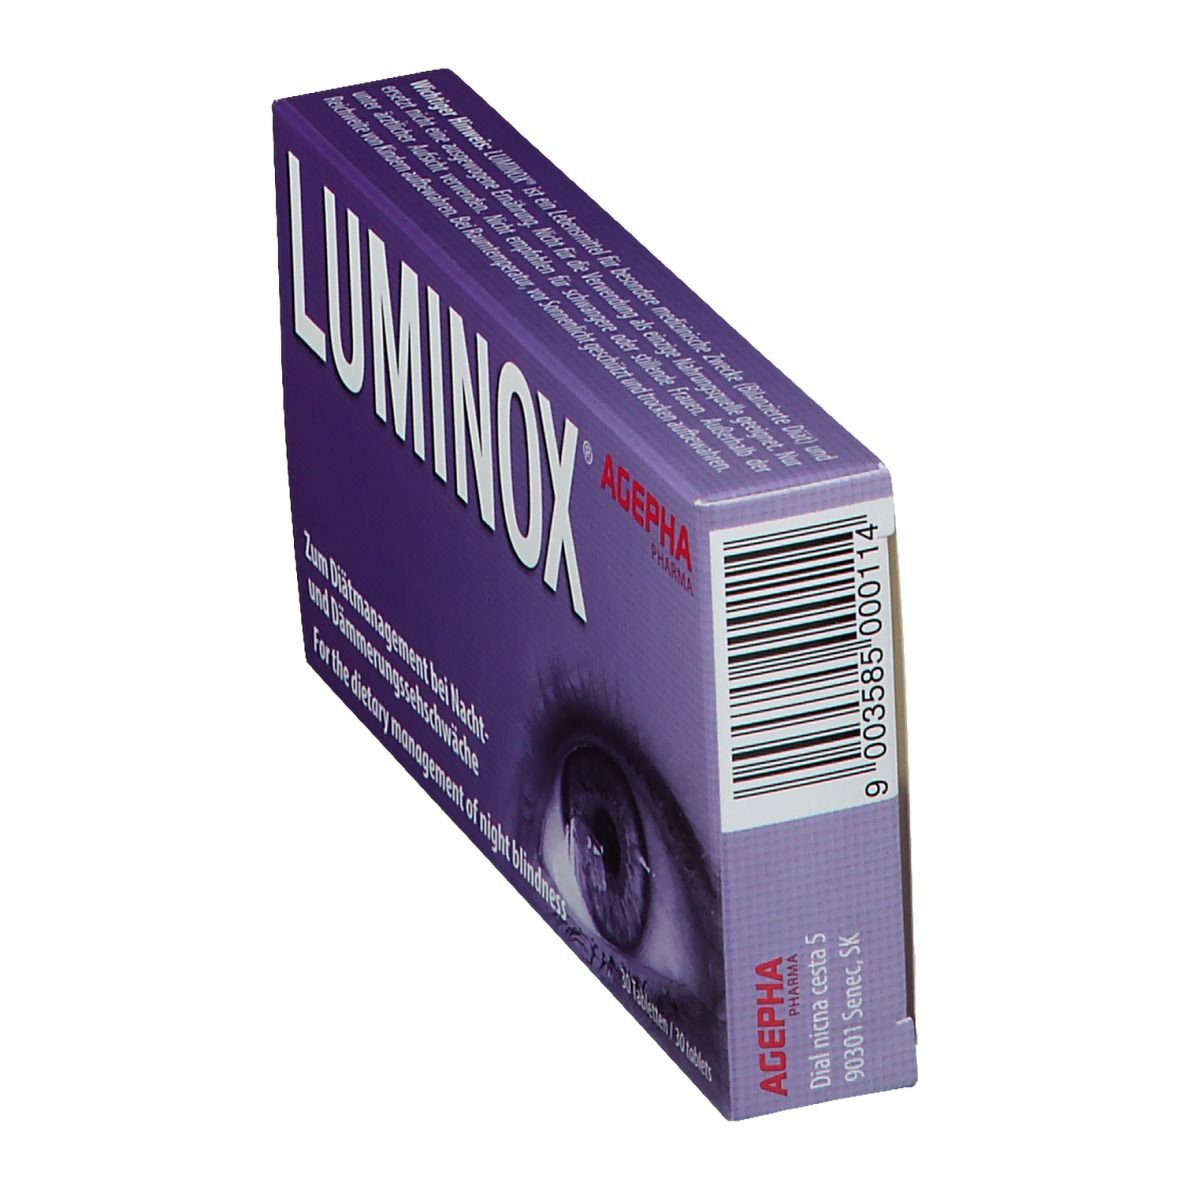 Luminox Tabletten